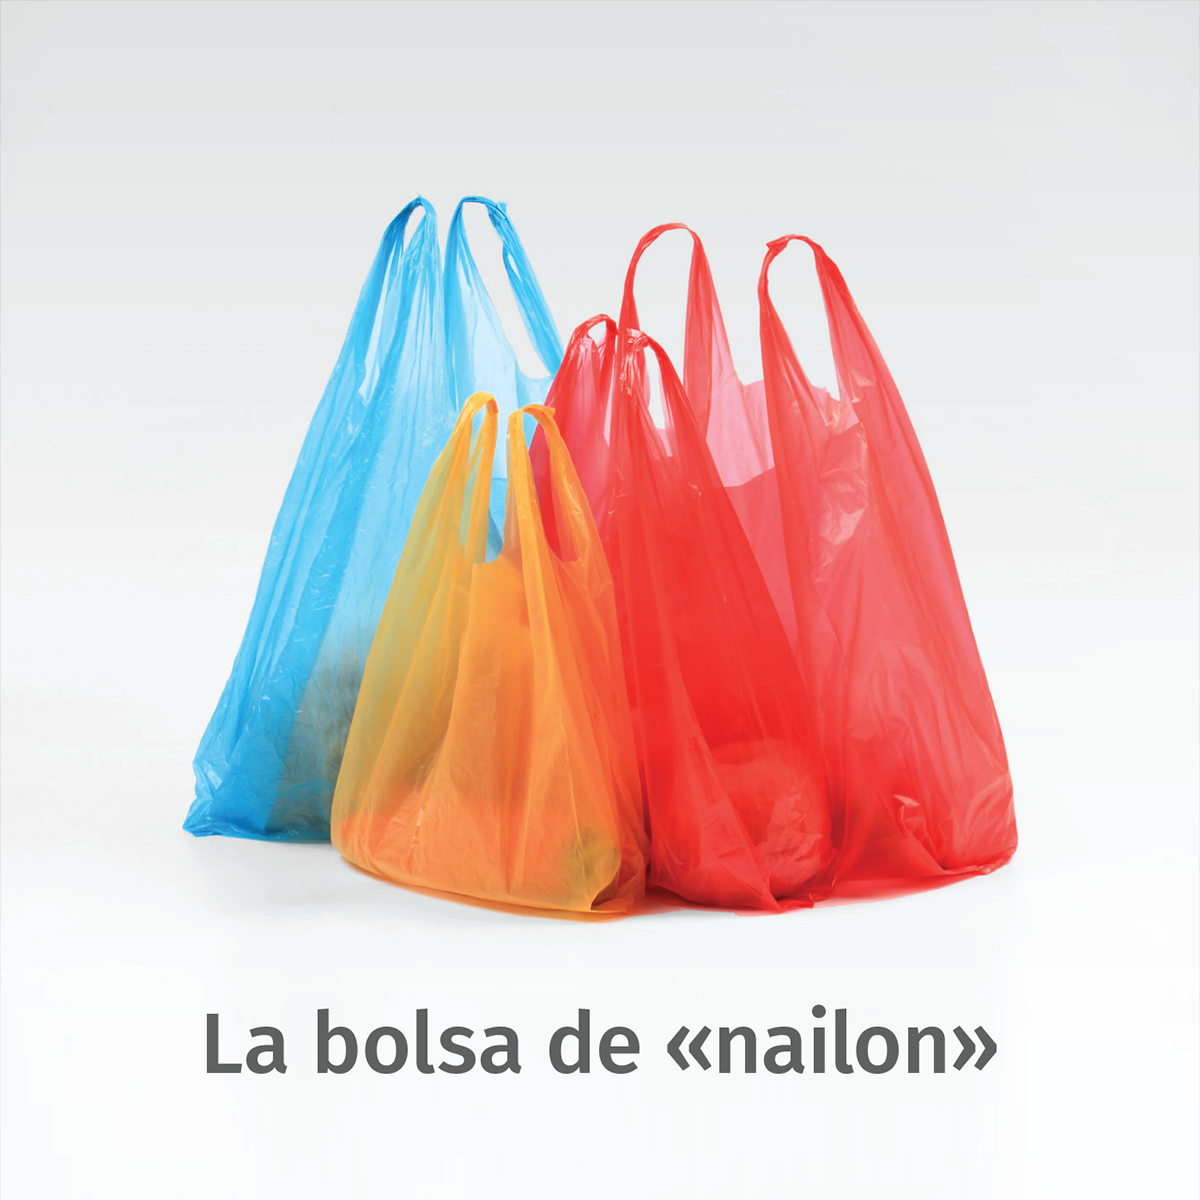 La bolsa de «nailon». No es de ningún modo simpático ser… | by Hugo Legaria  | Medium